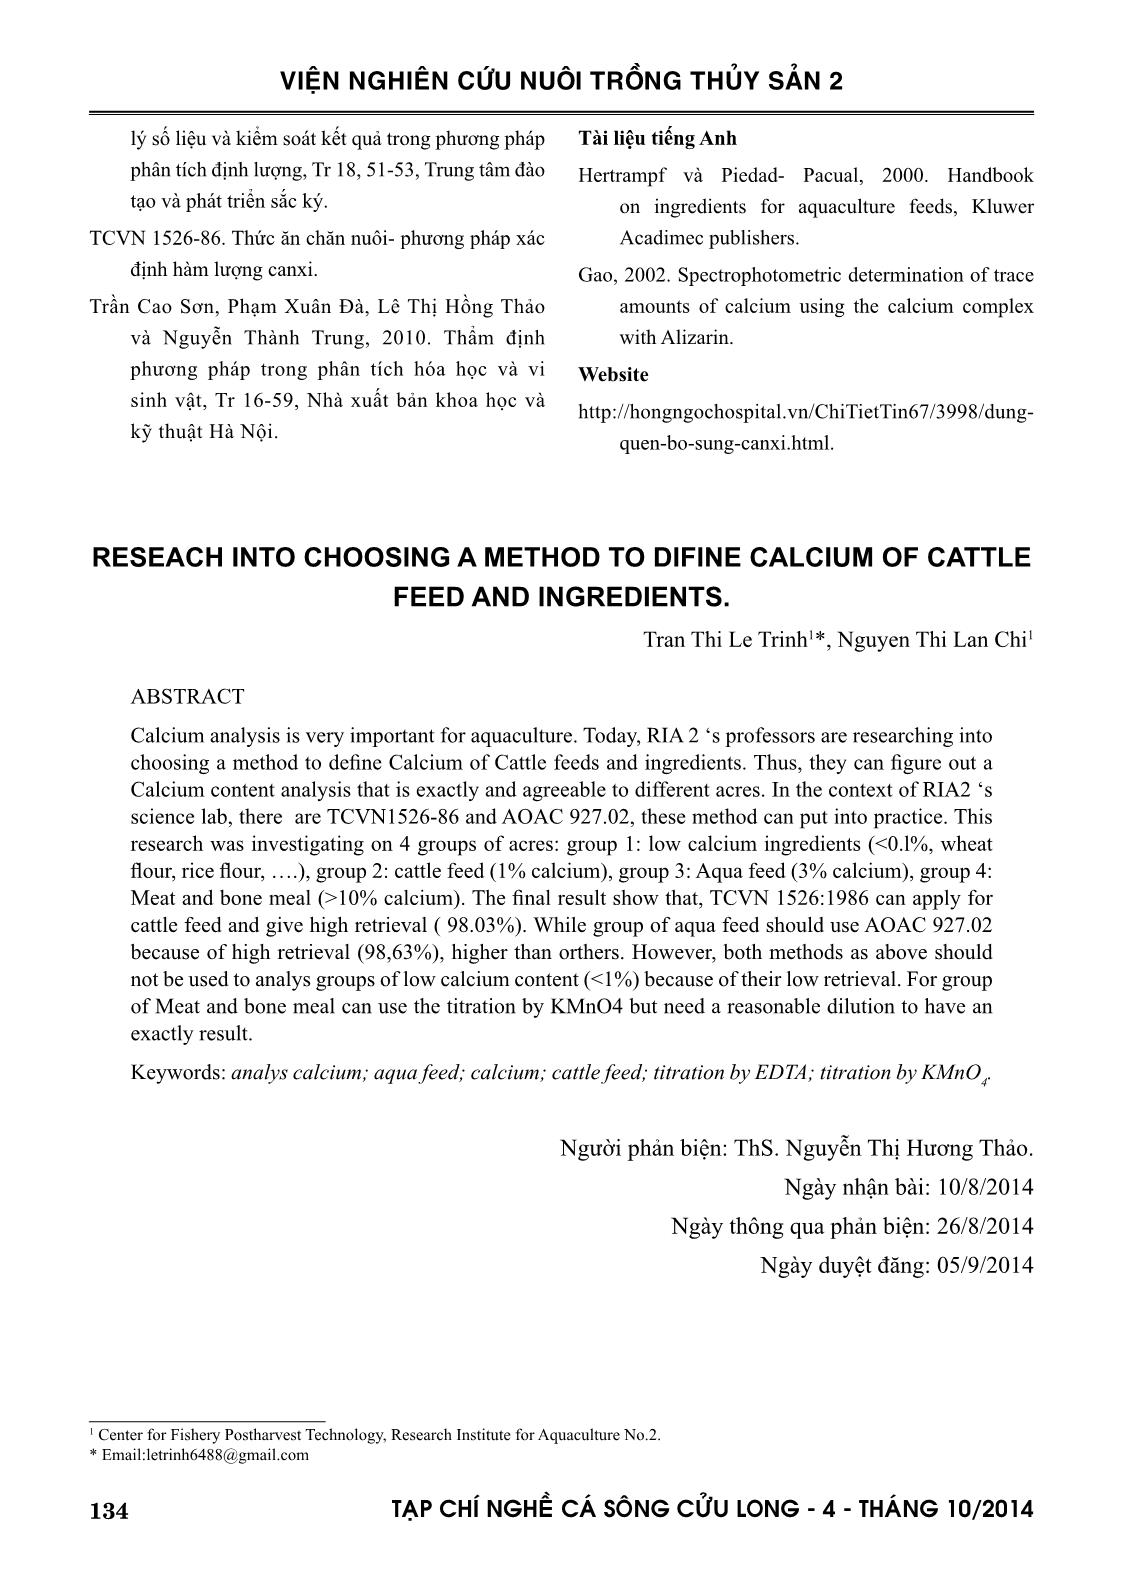 Nghiên cứu lựa chọn phương pháp phân tích để xác định canxi trong nguyên liệu và thức ăn vật nuôi trang 9